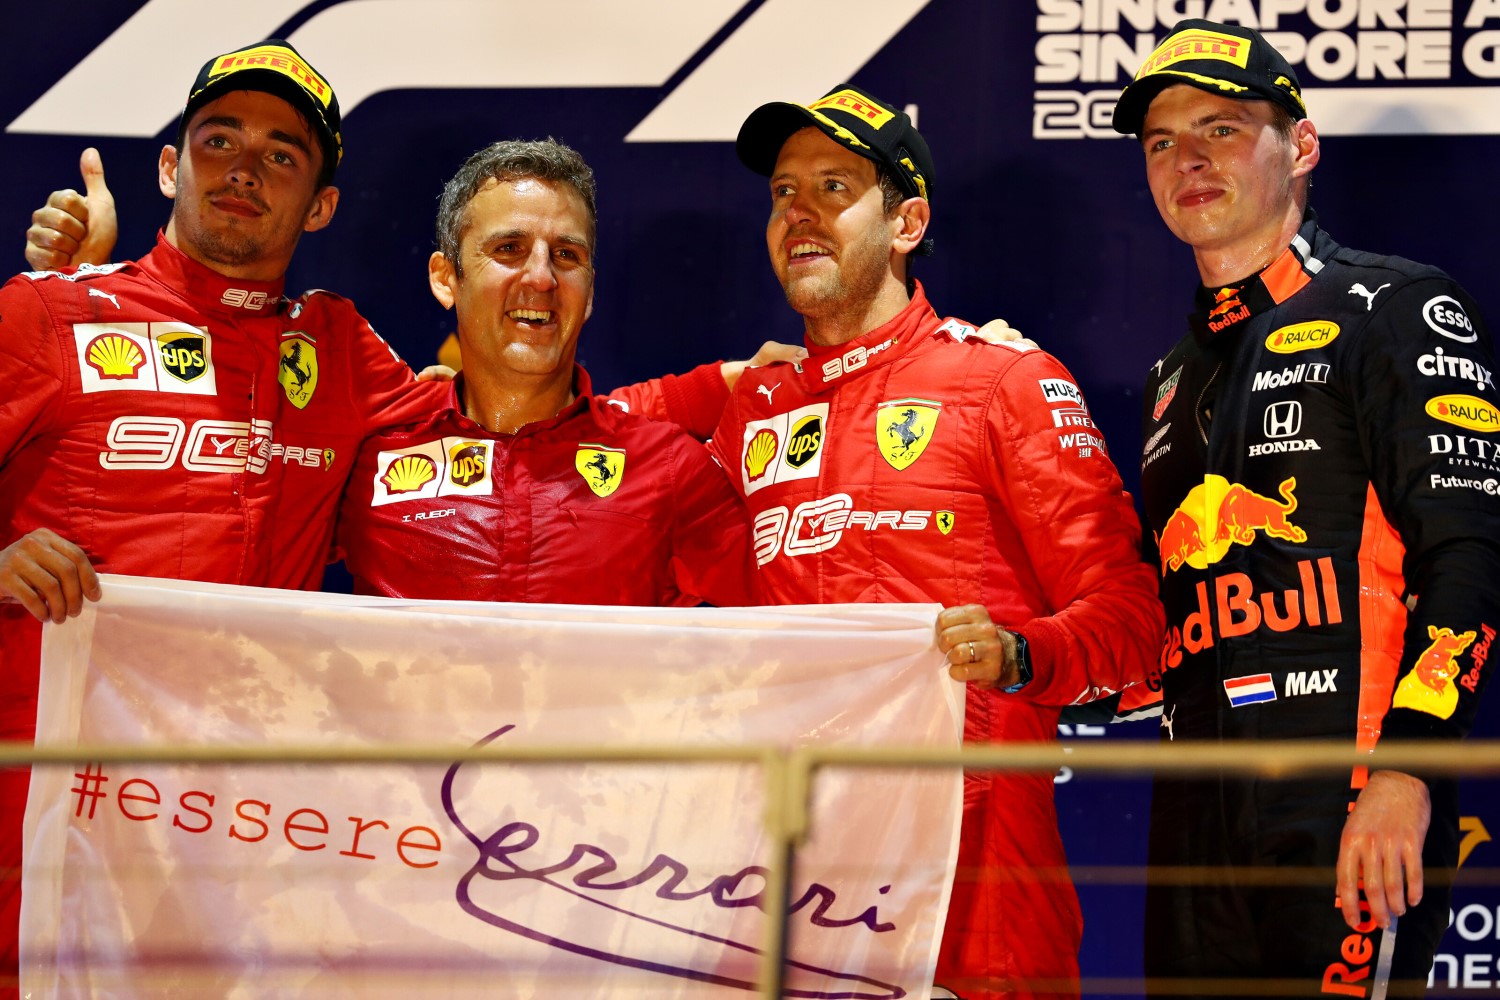 From left, Leclerc, Vettel and Verstappen